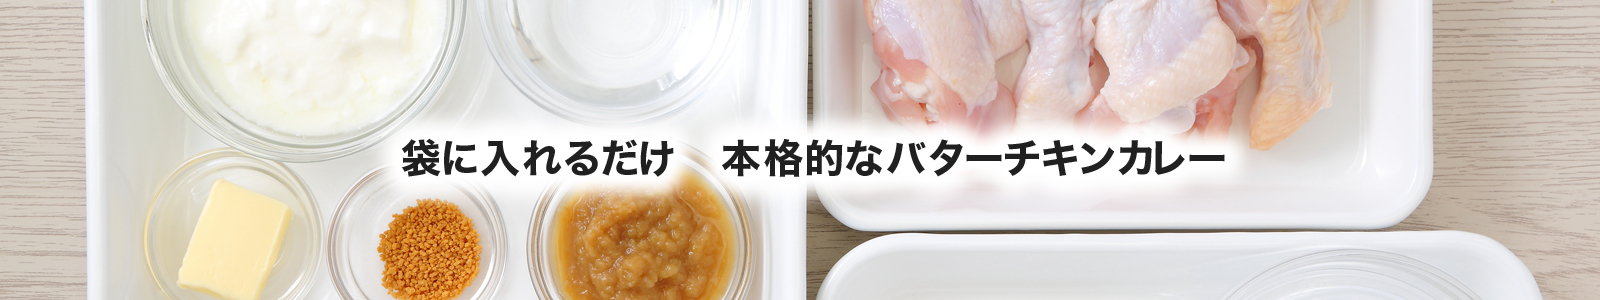 【湯煎調理レシピ】チキンカレー